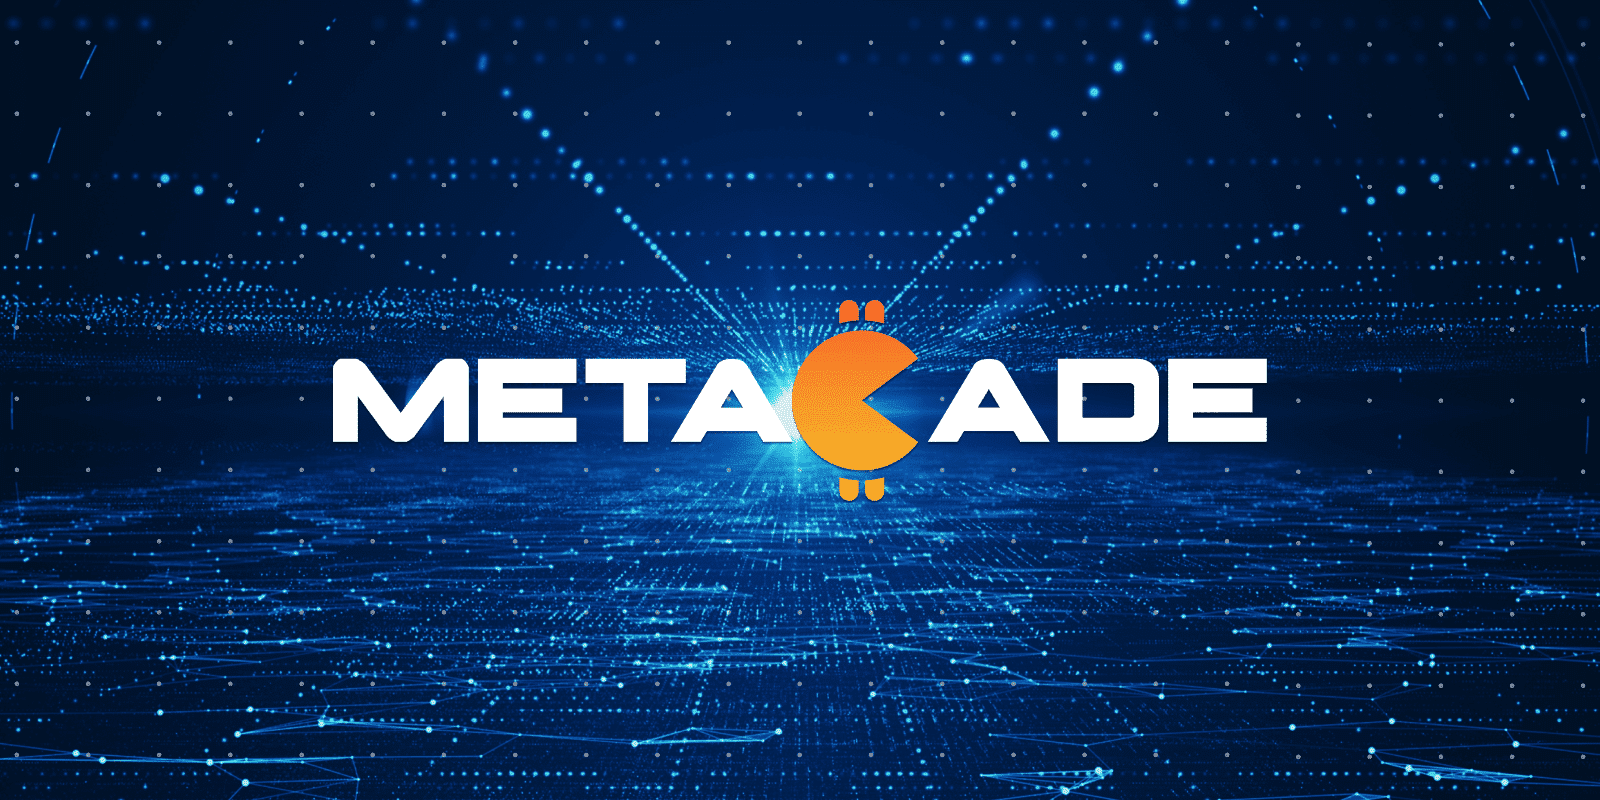 Le logo Metacade